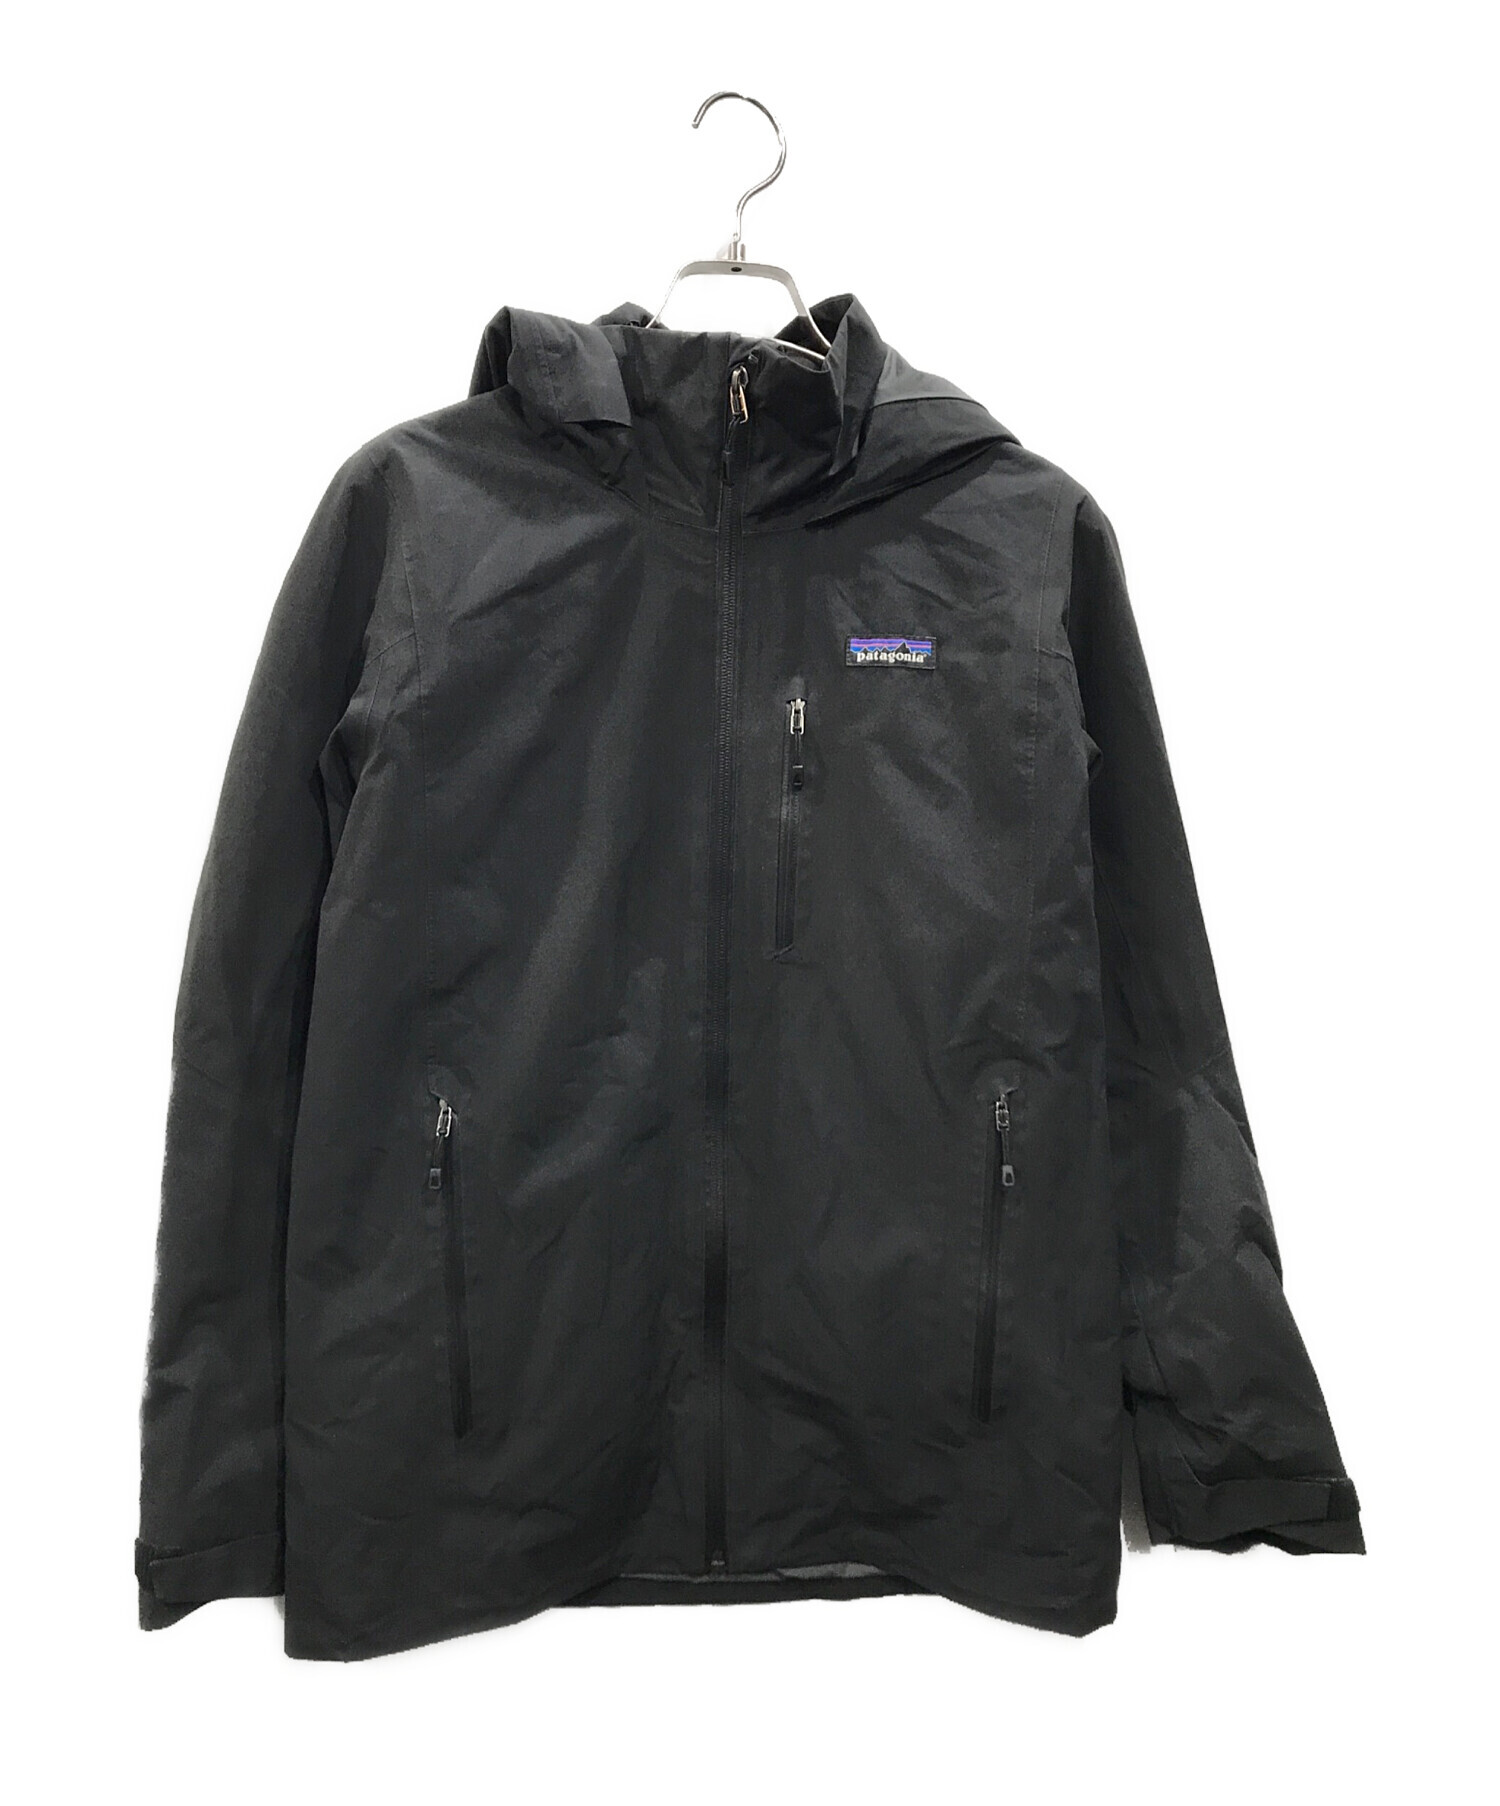 Patagonia (パタゴニア) ウインドスウィープジャケット ブラック サイズ:XS